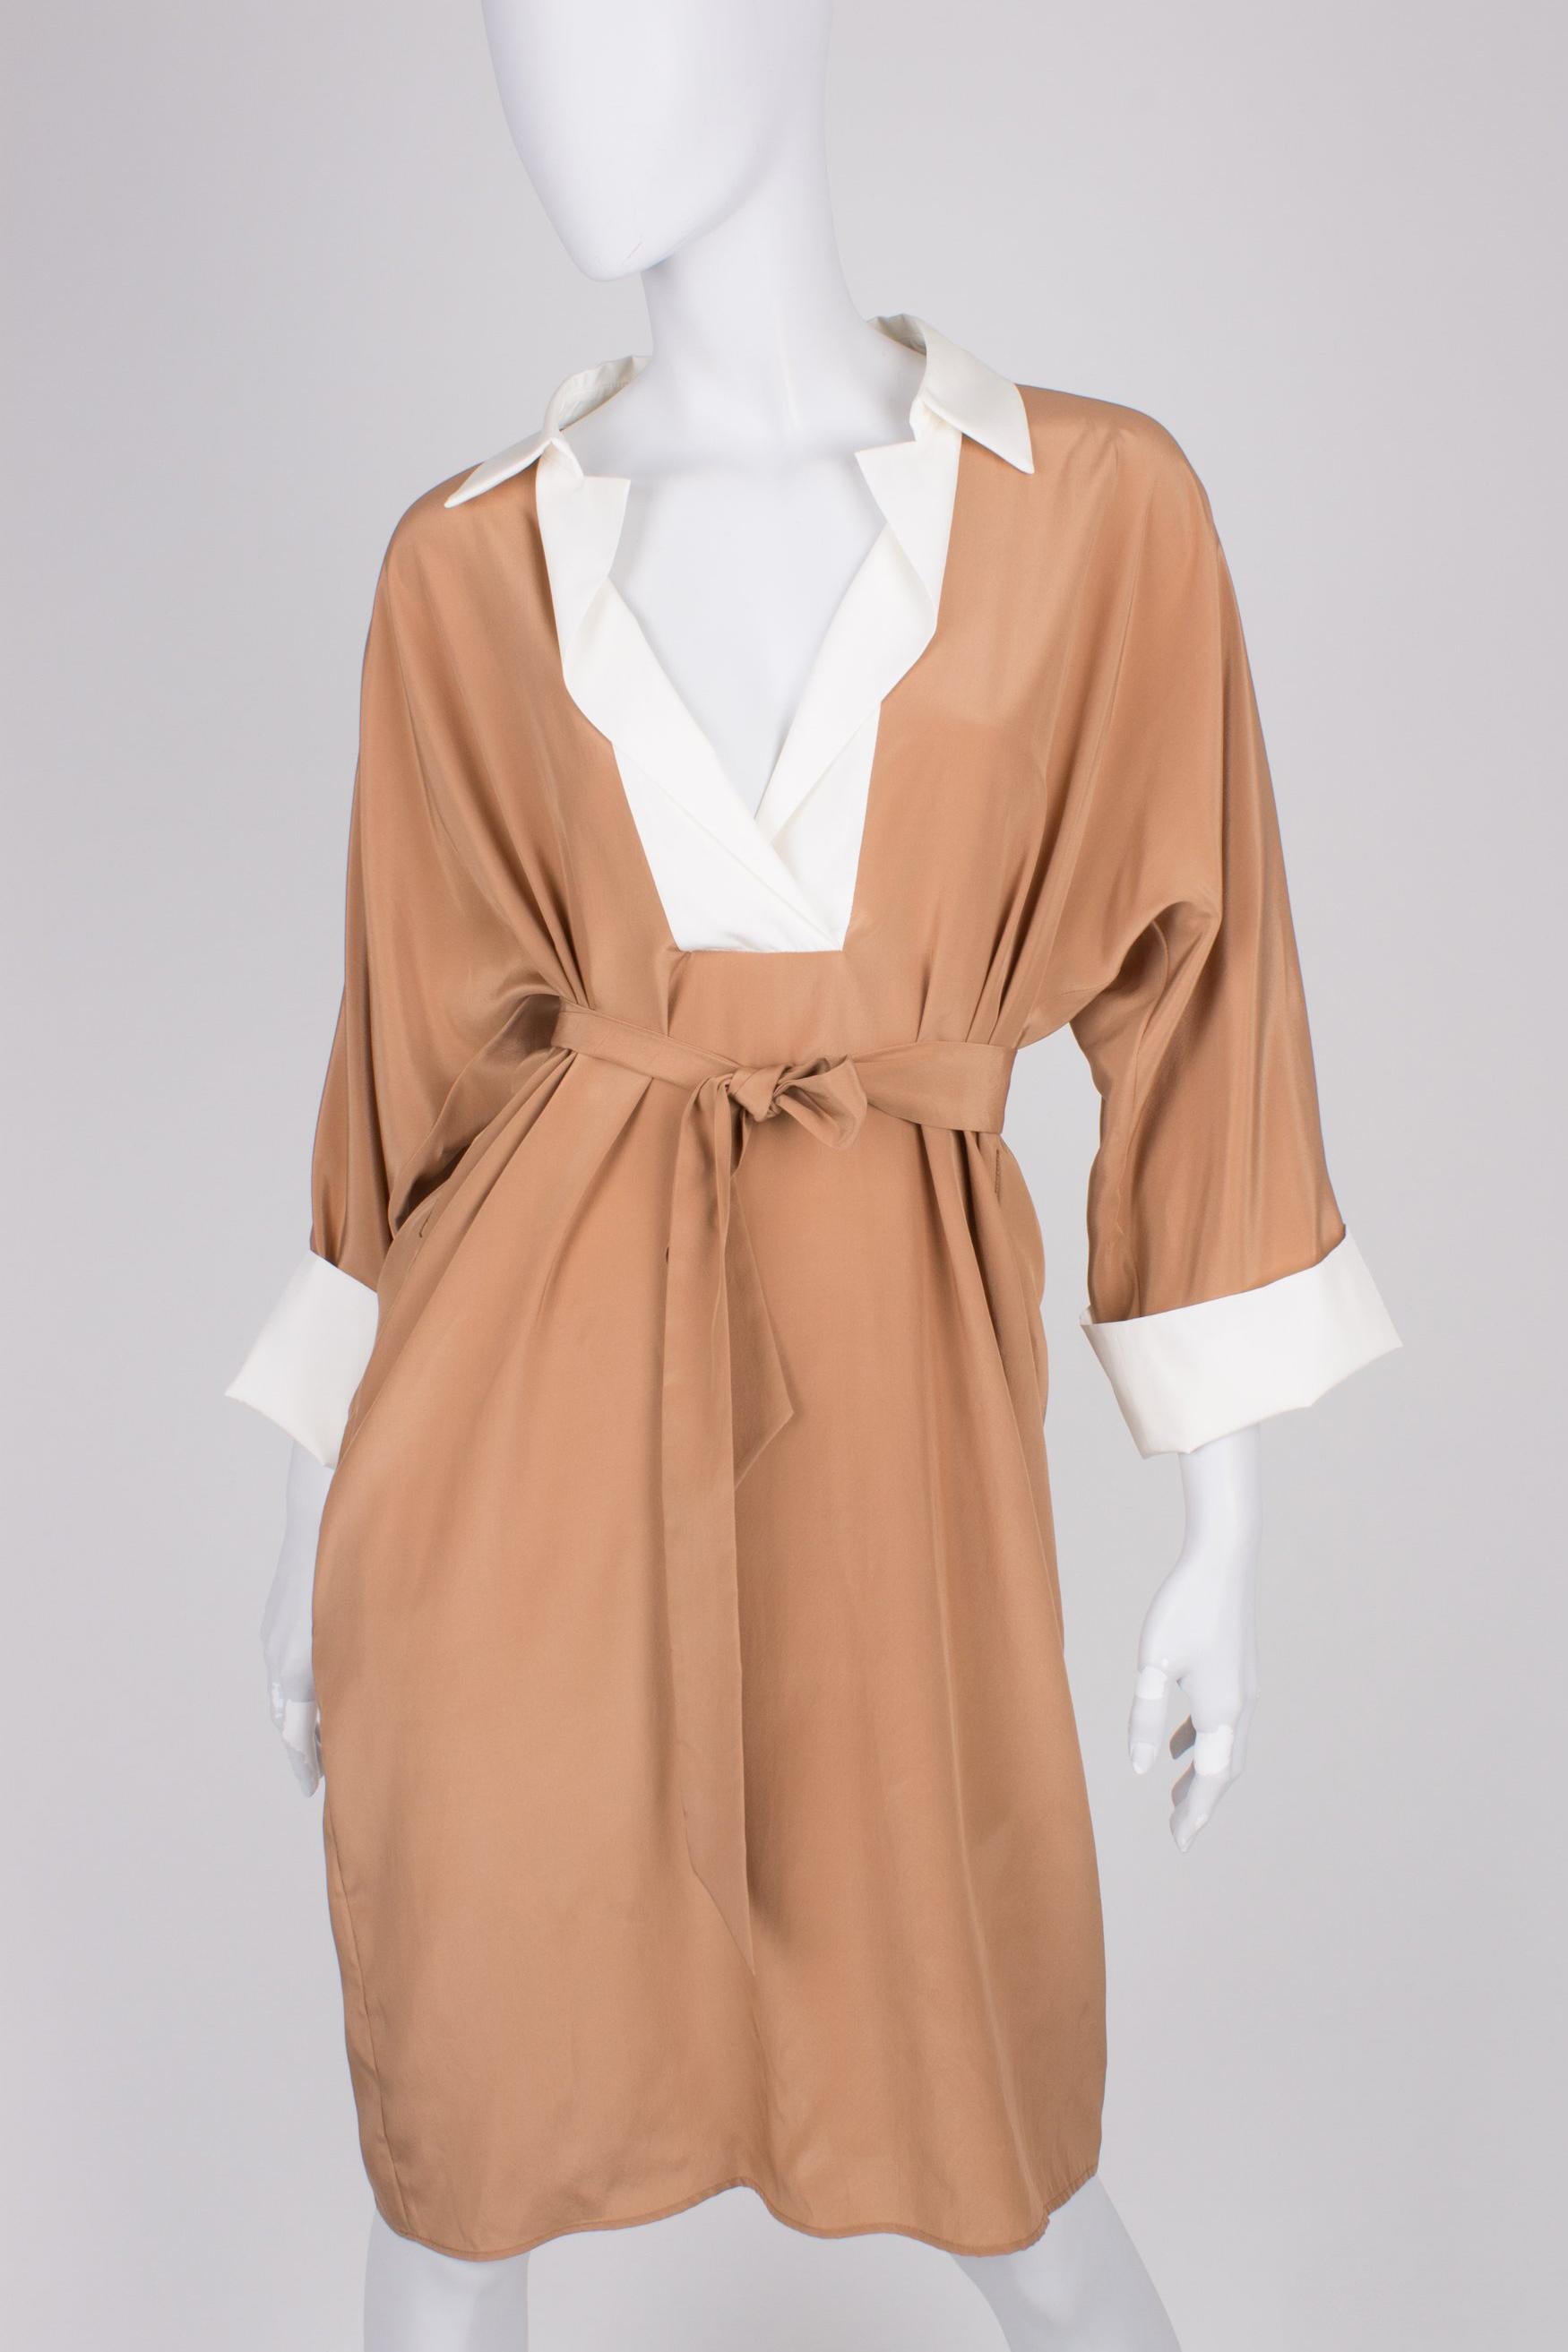 Brown Salvatore Ferragamo Silk Dress - camel/white For Sale